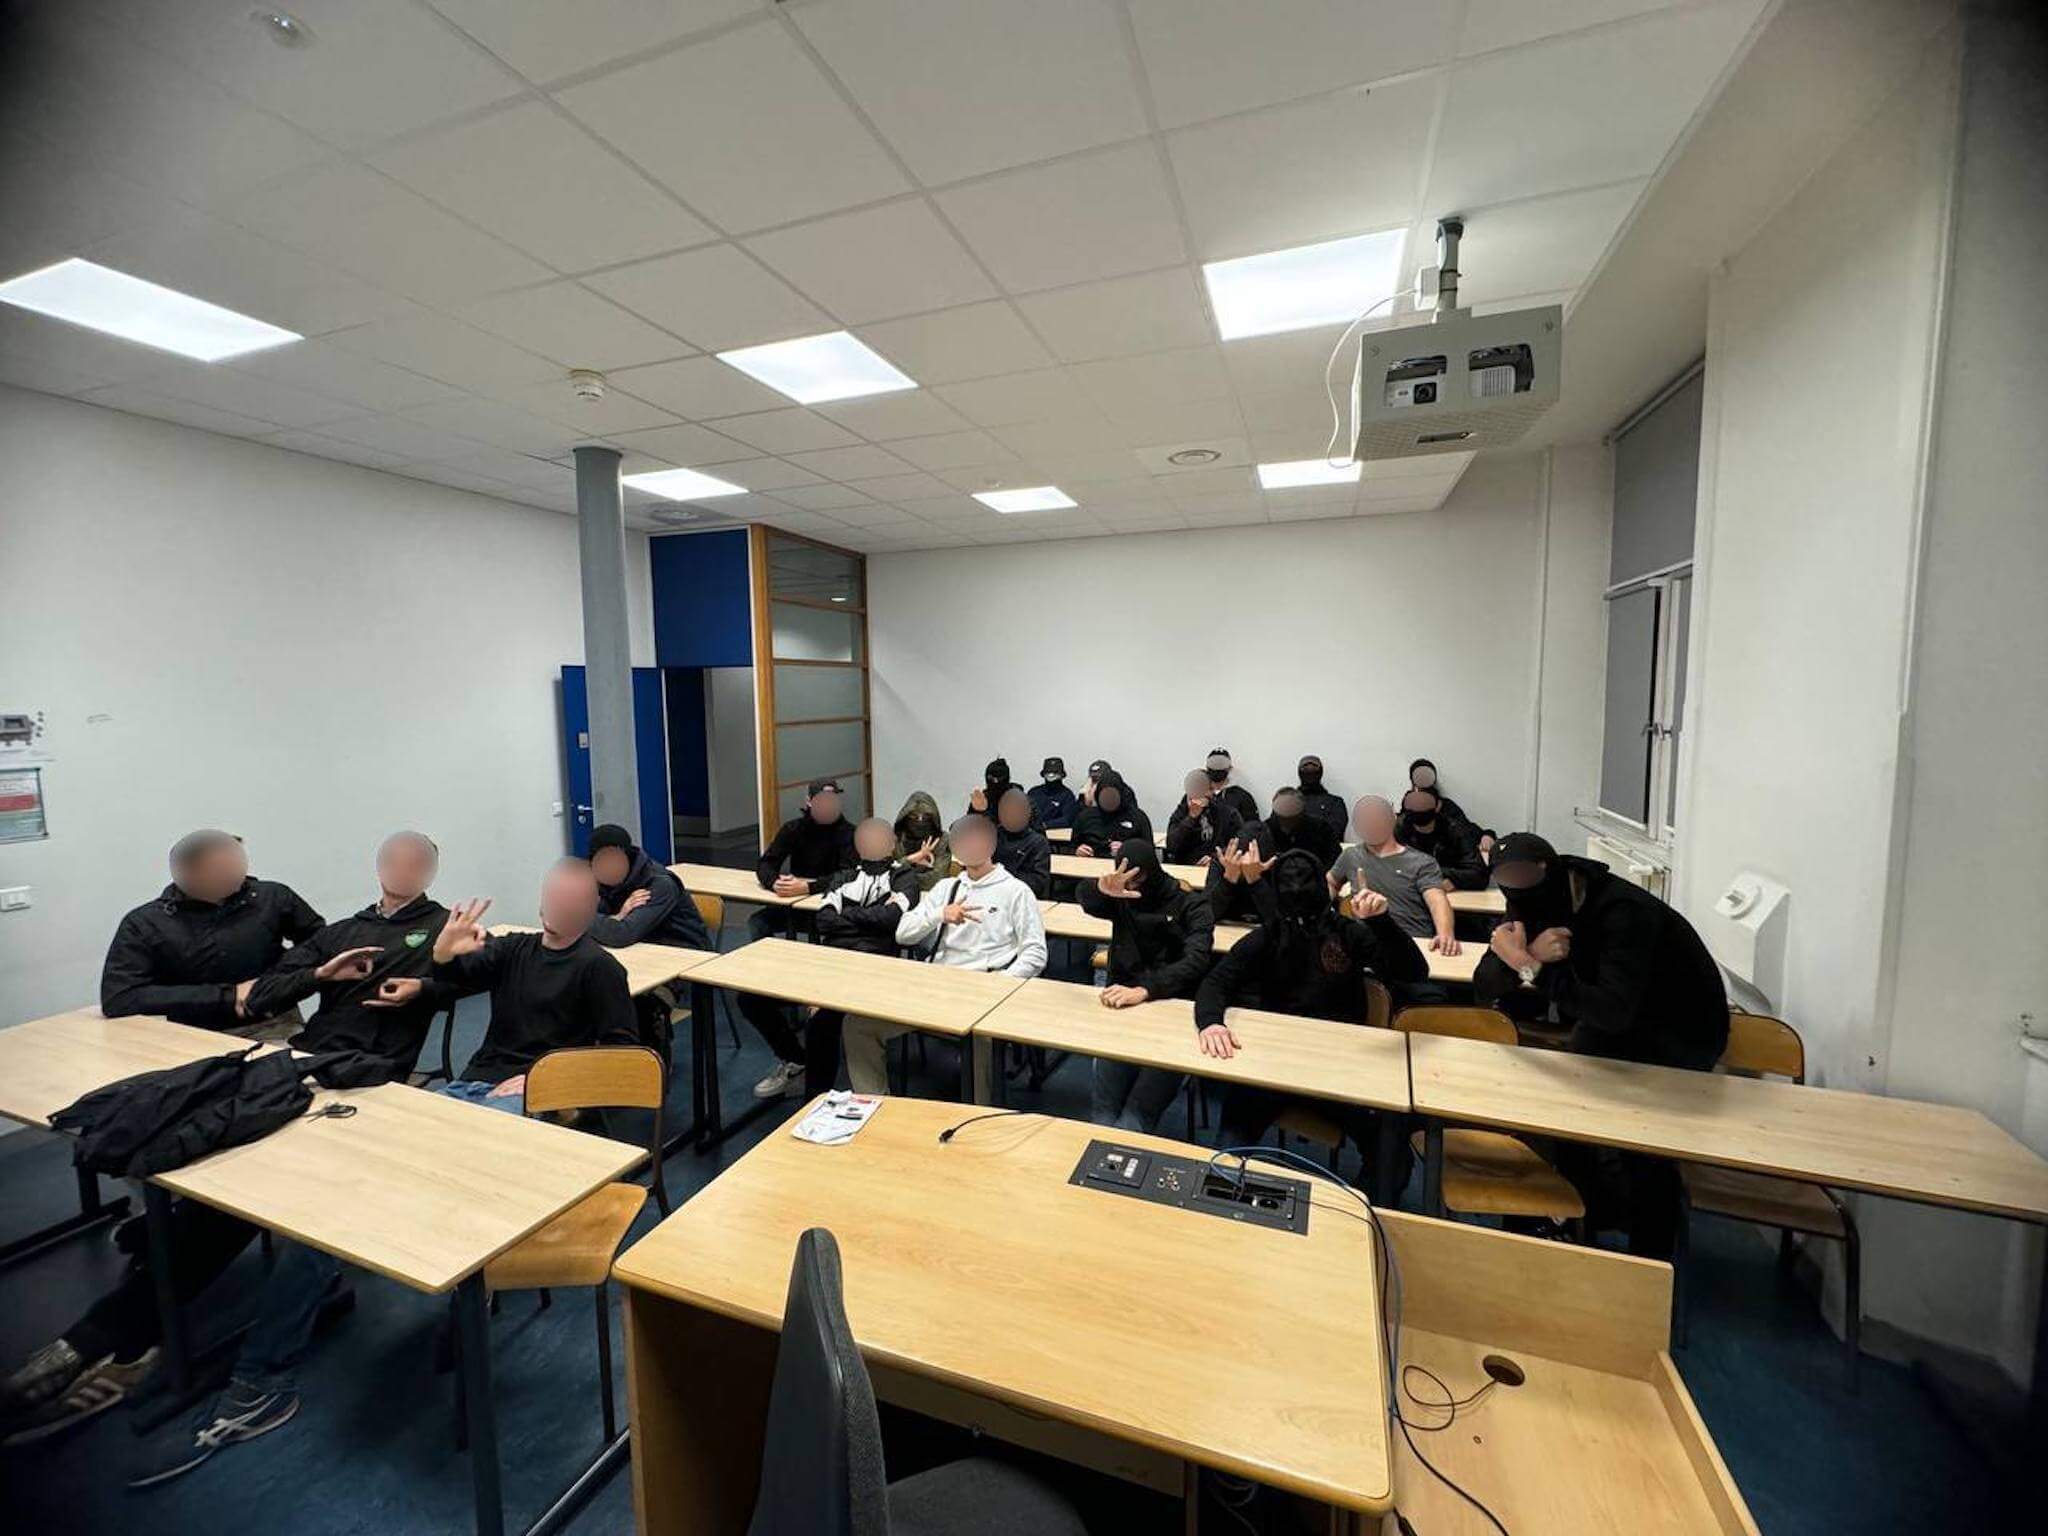 La photo de revendication postée sur Ouest Casual, après l'intrusion de 20 militants d'extrême droite dans l'Université Lyon 3. ©Ouest Casual